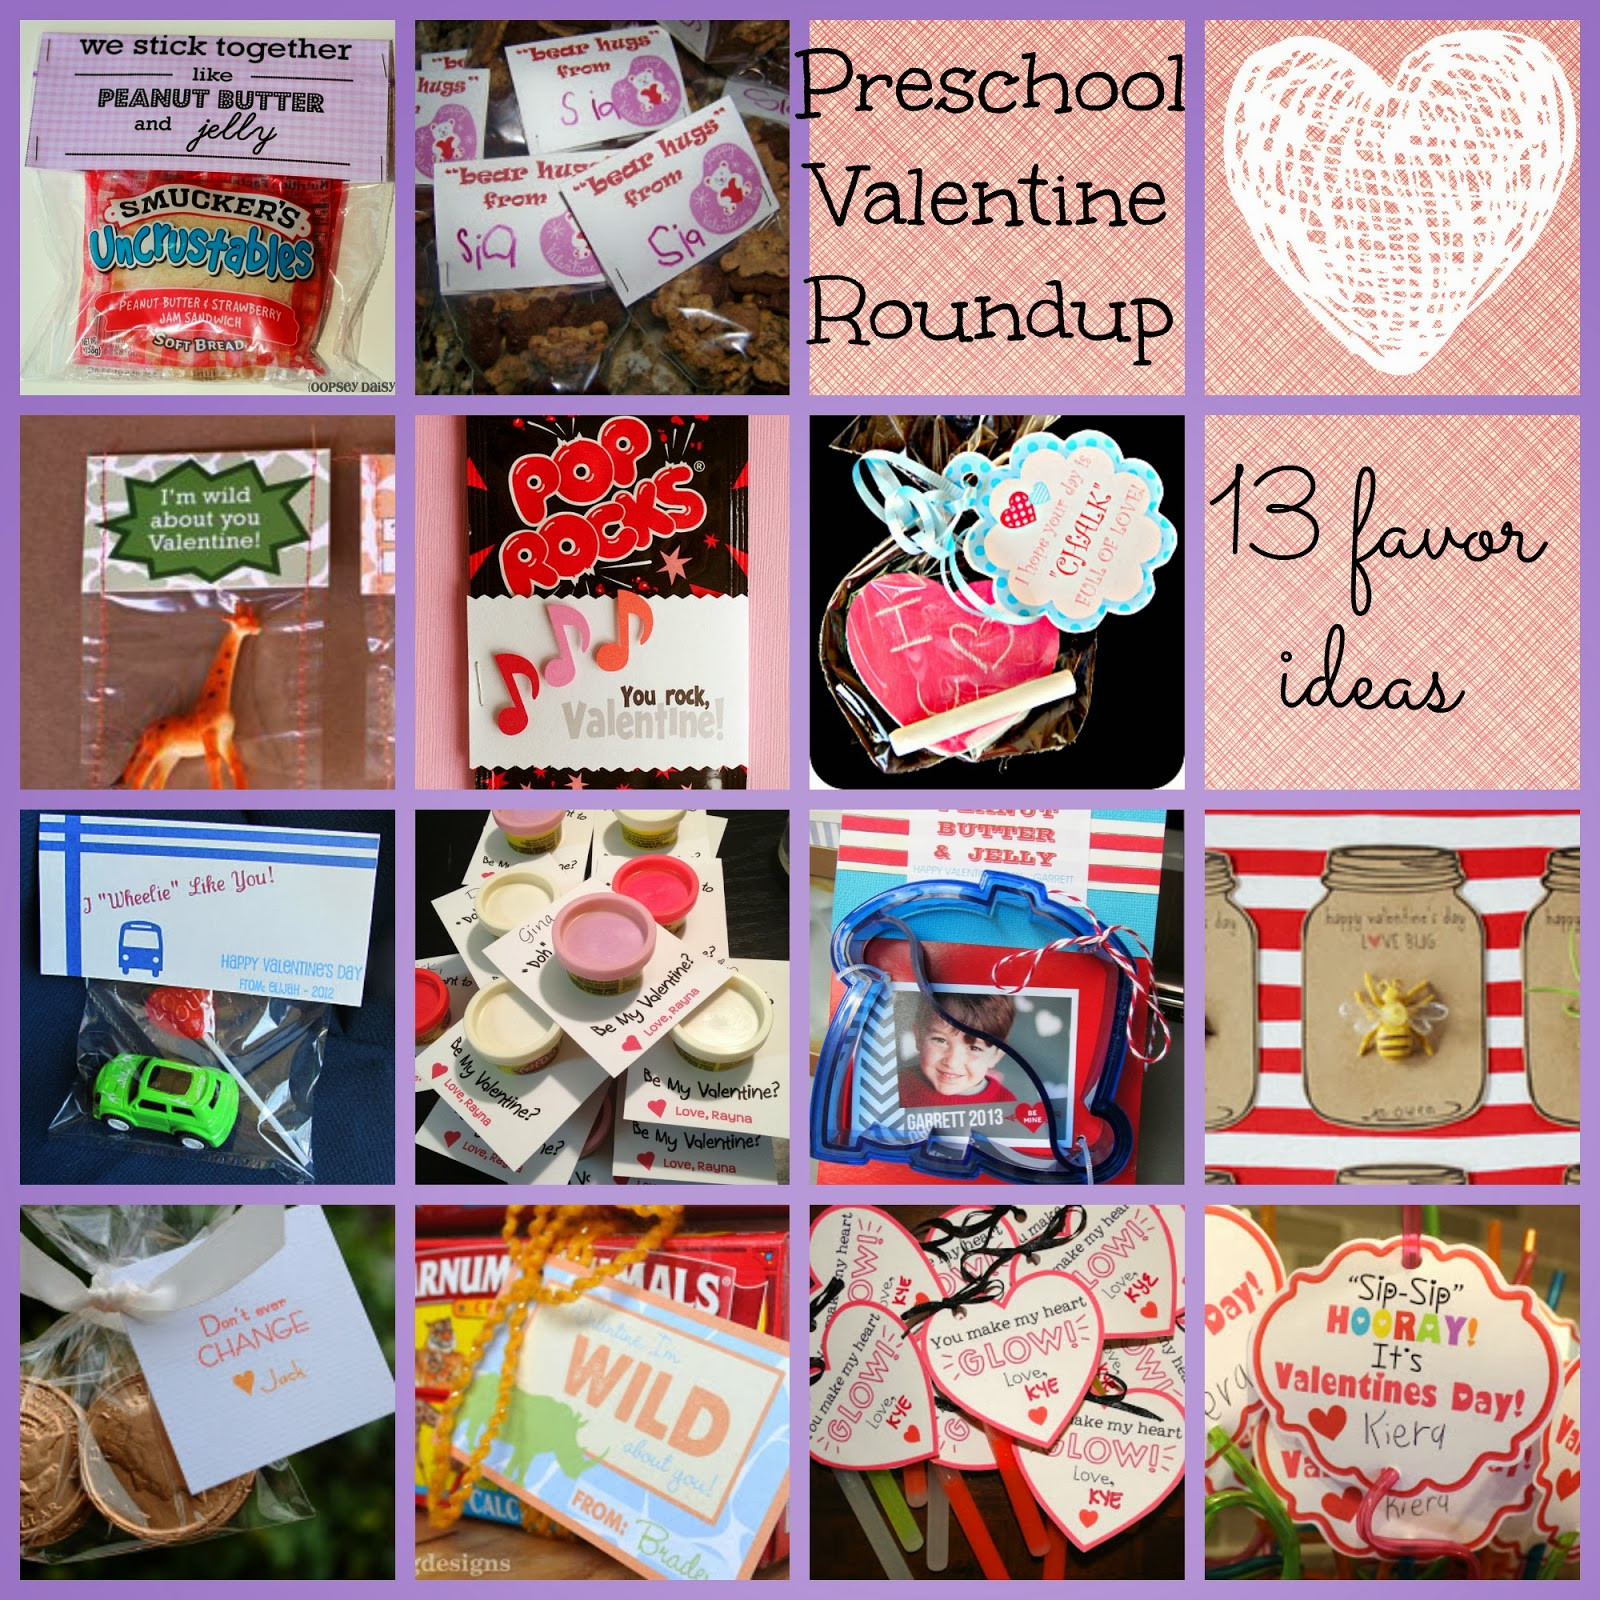 Best ideas about Preschool Valentine Gift Ideas
. Save or Pin Zucchini Summer [13] Preschool Valentine Favor Ideas Now.